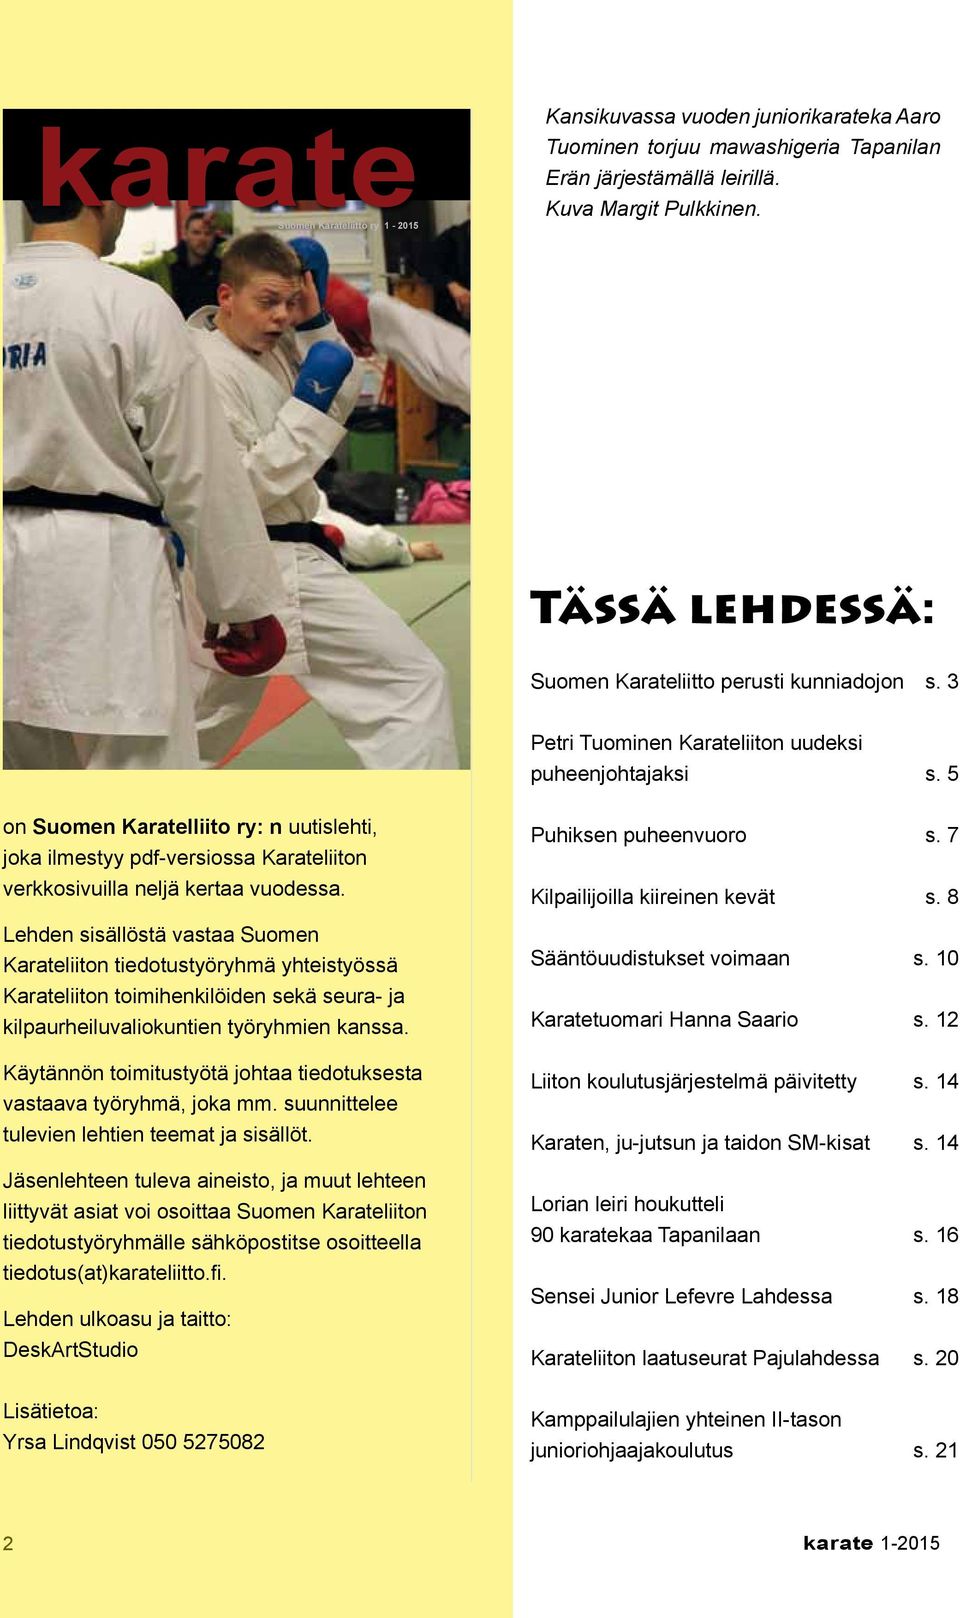 3 karate 1-2015 on Suomen Karatelliito ry: n uutislehti, joka ilmestyy pdf-versiossa Karateliiton verkkosivuilla neljä kertaa vuodessa.